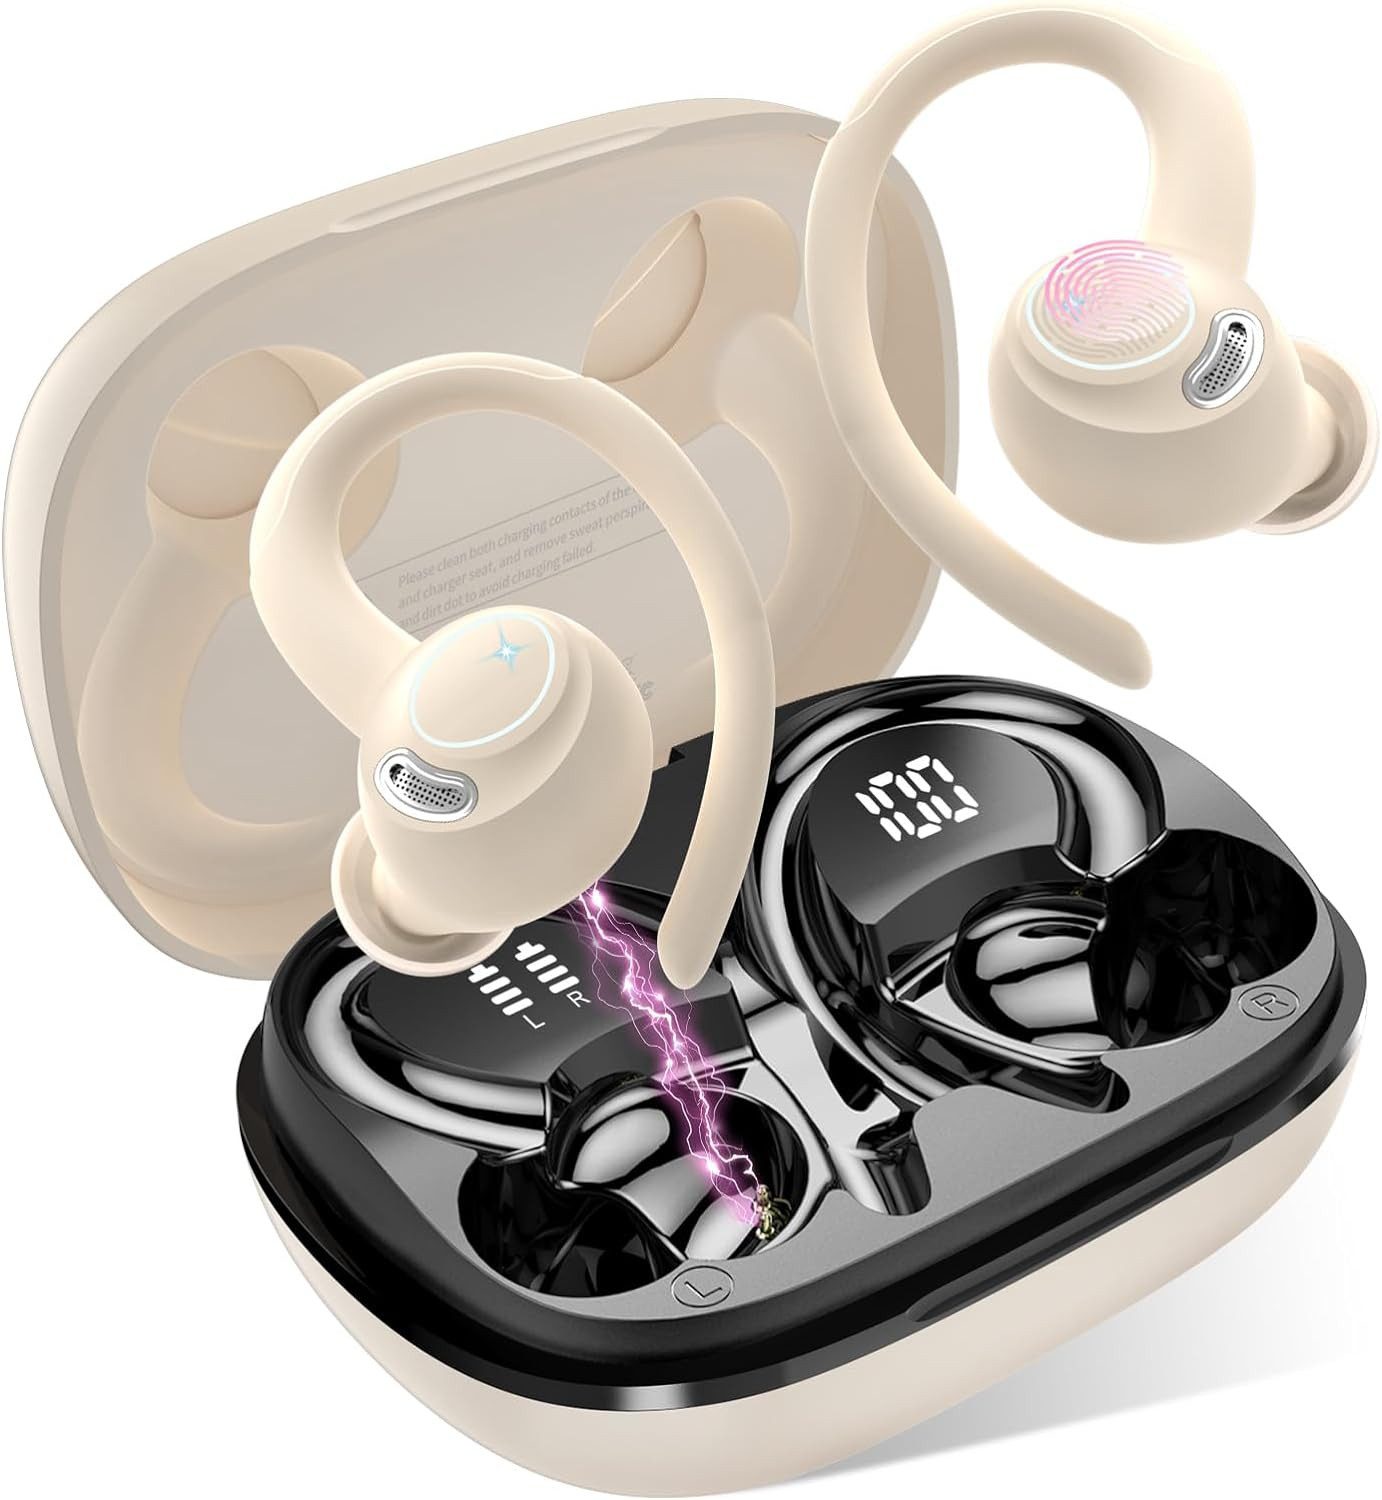 Jesebang 8 Stunden Akkulaufzeit pro Ladung bieten In-Ear-Kopfhörer (mit 13-mm-Dynamiktreiber und Touch-Oberfläche für mühelose Musiksteuerung, für Stabilität und Komfort bei Laufen oder Sportaktivitäten, Exzellenter Klanggenuss und Benutzerfreundlichkeit,mit IP7 Wasserdicht)